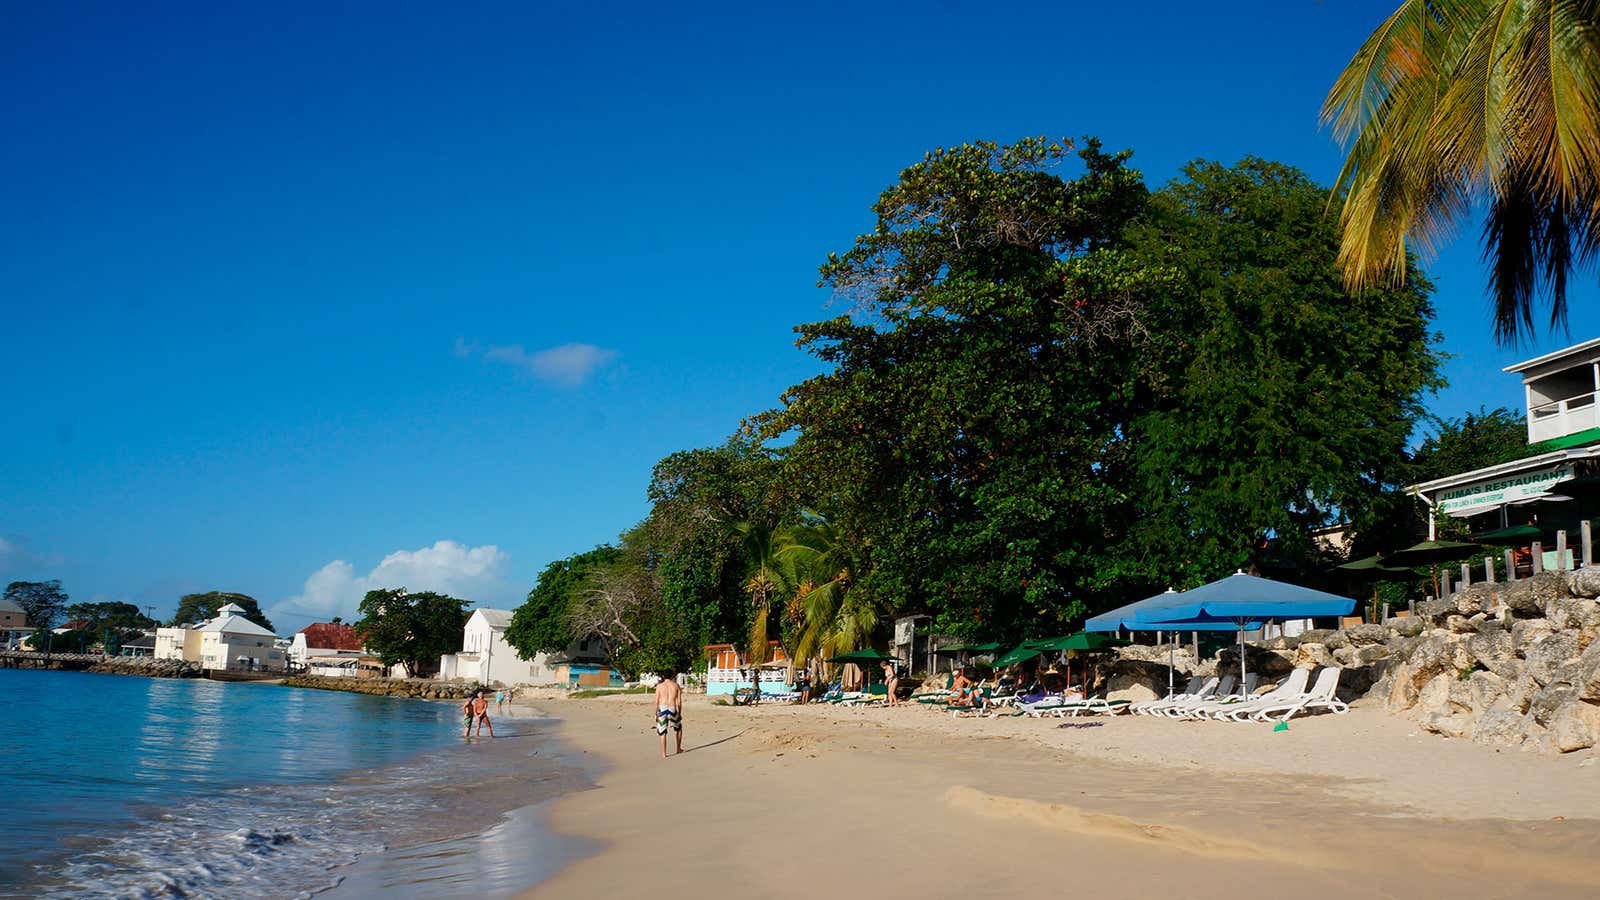 Next vacation home in Barbados (AP/ Kavitha Surana)